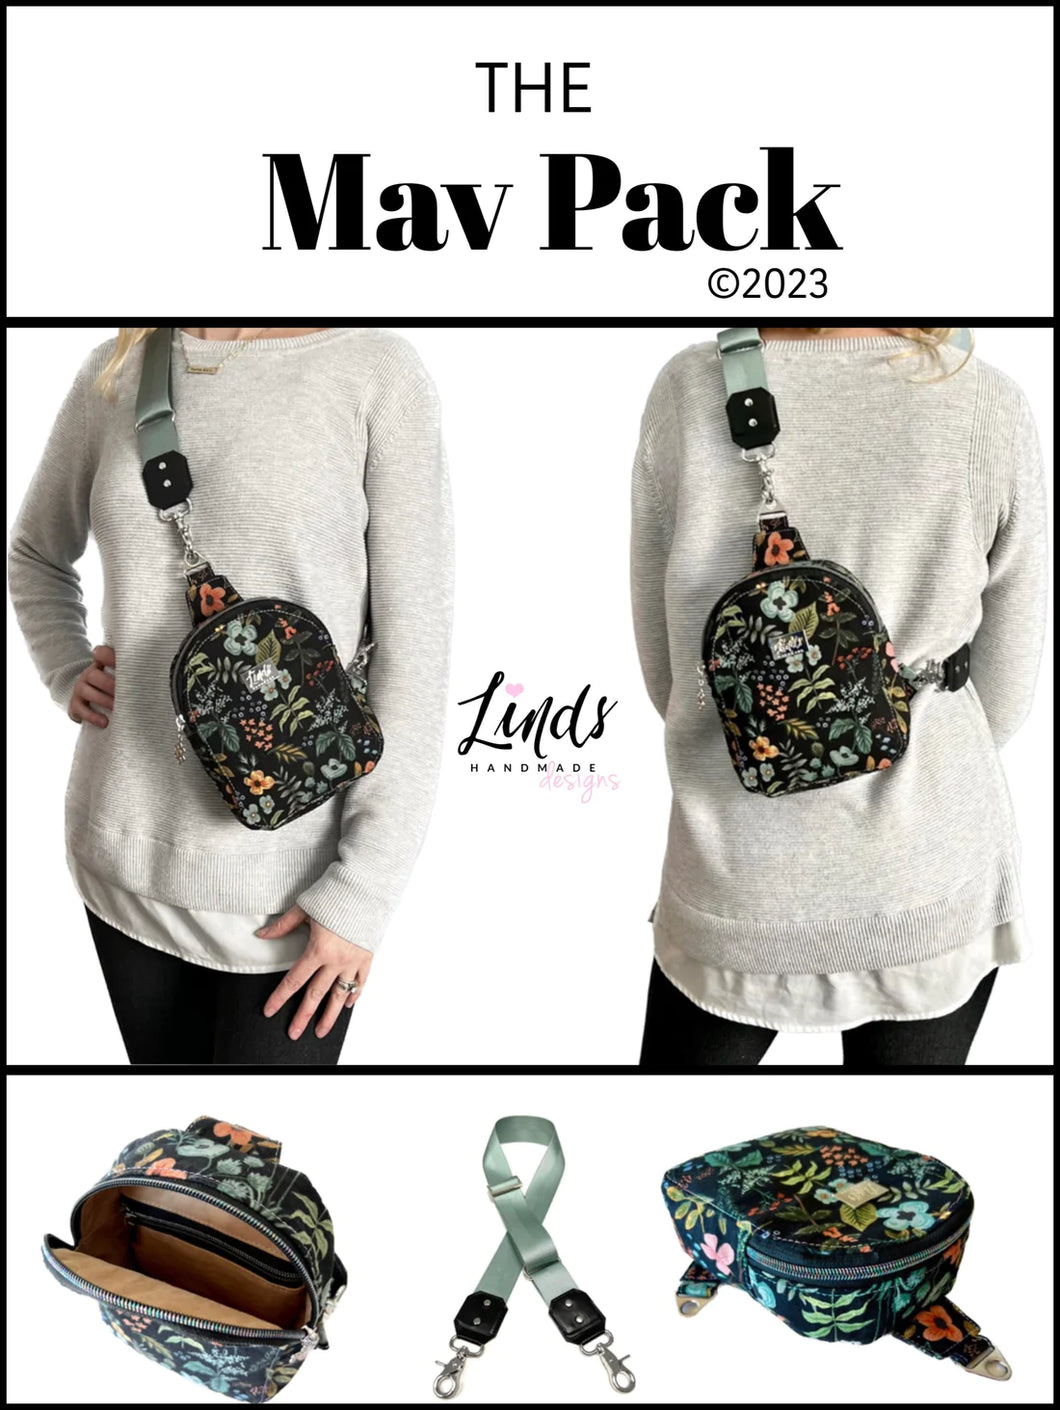 The Mav Pack Acrylic Templates